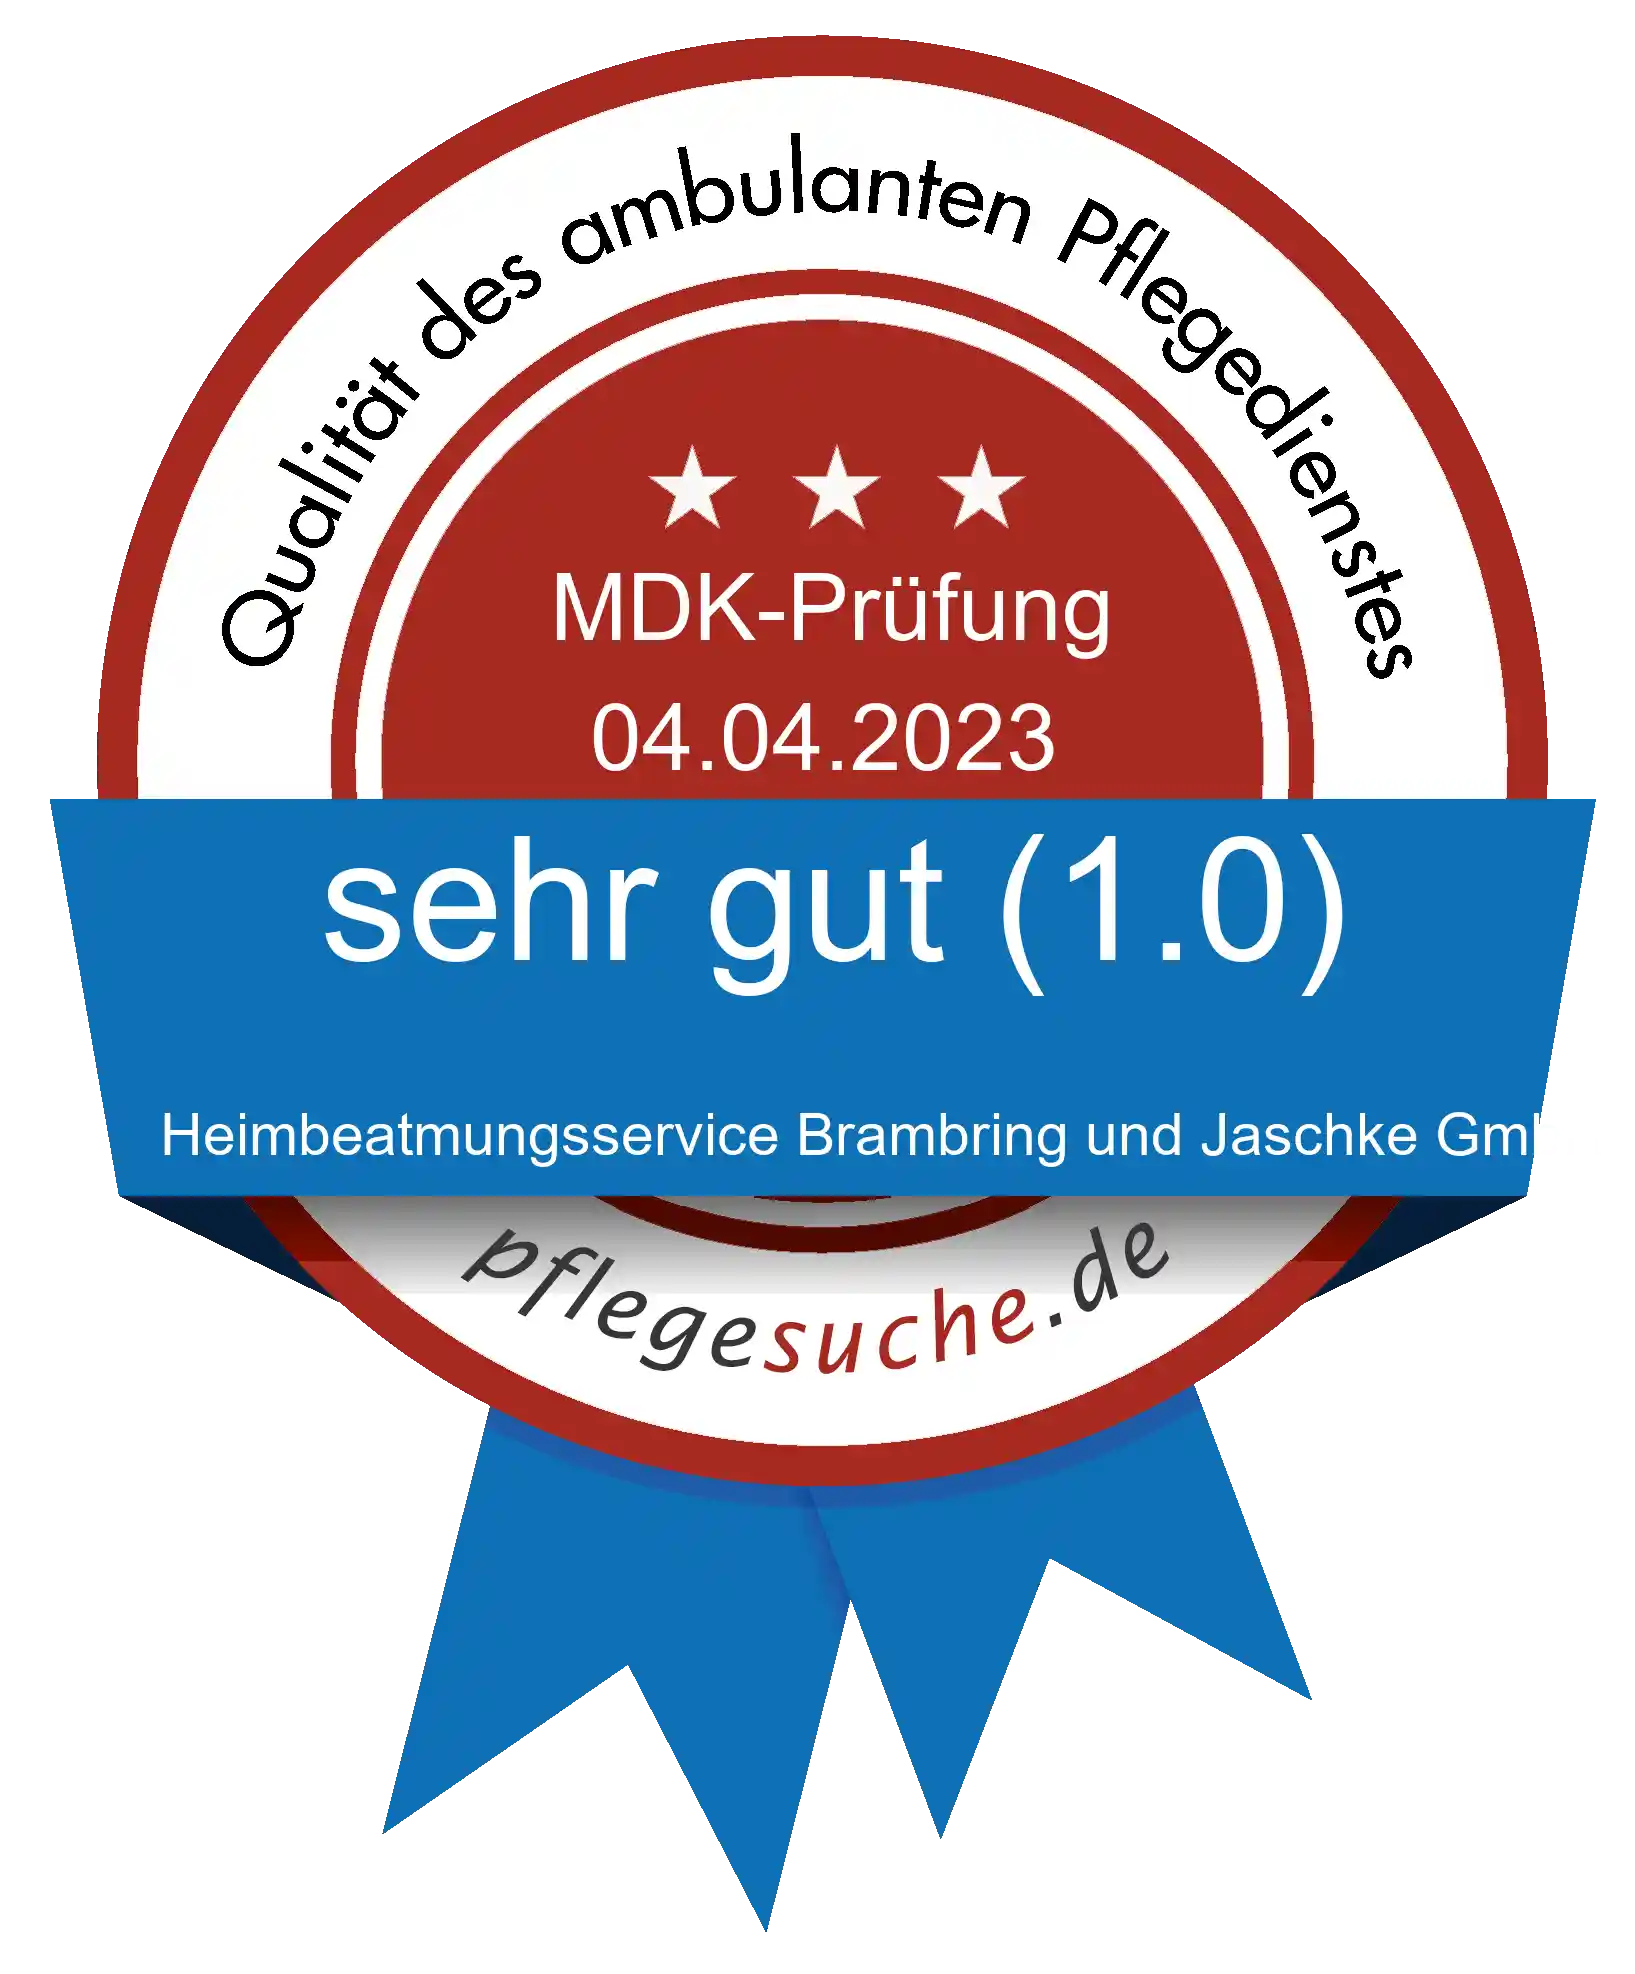 Siegel Benotung: Heimbeatmungsservice Brambring und Jaschke GmbH